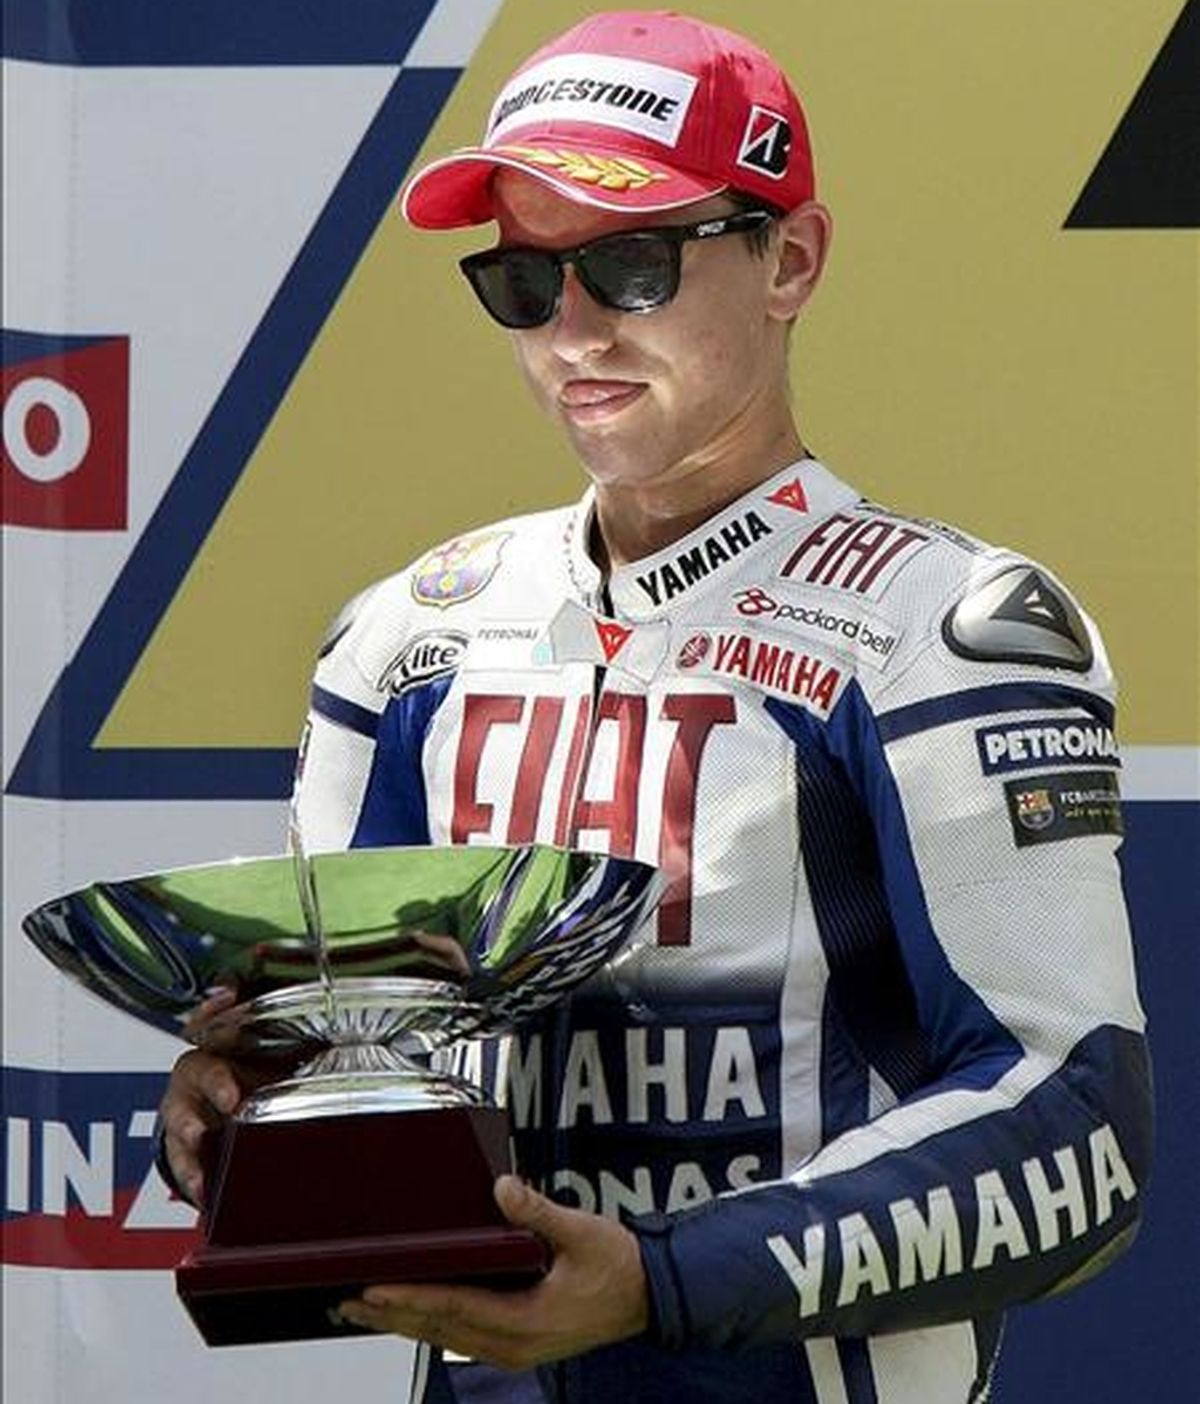 El piloto español Jorge Lorenzo (Yamaha), que lidera el Mundial de MotoGP. EFE/Archivo